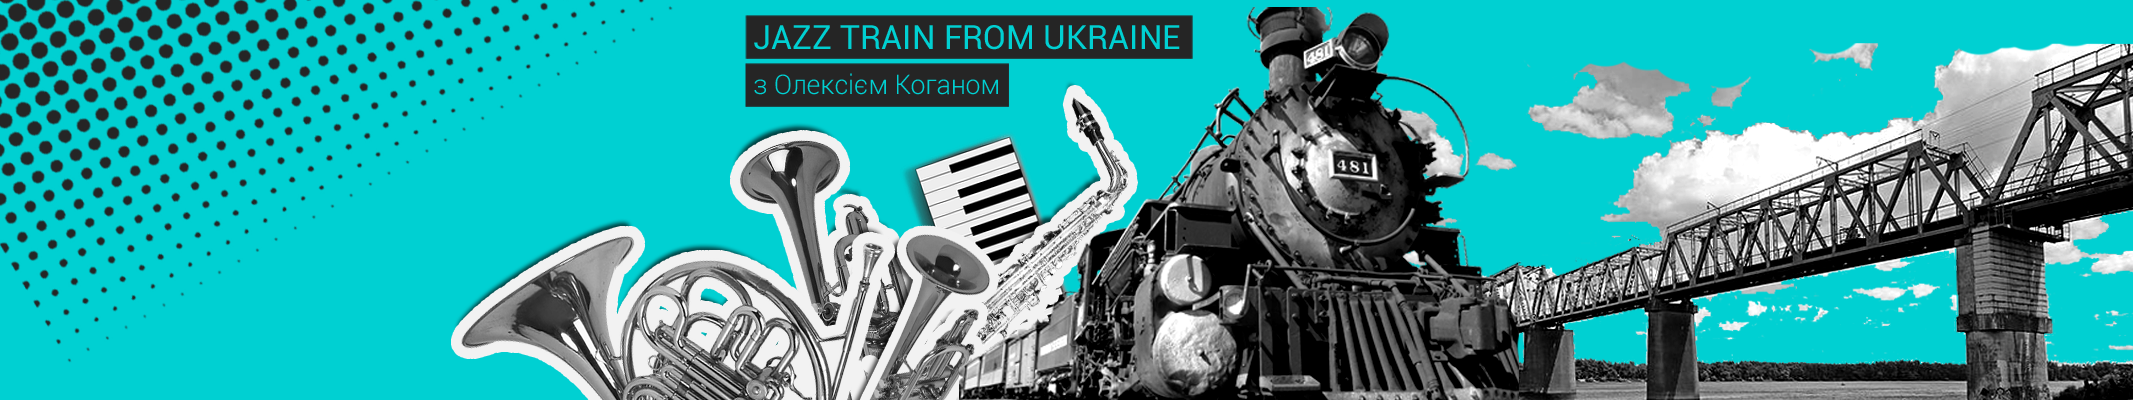 Jazz Train from Ukraine